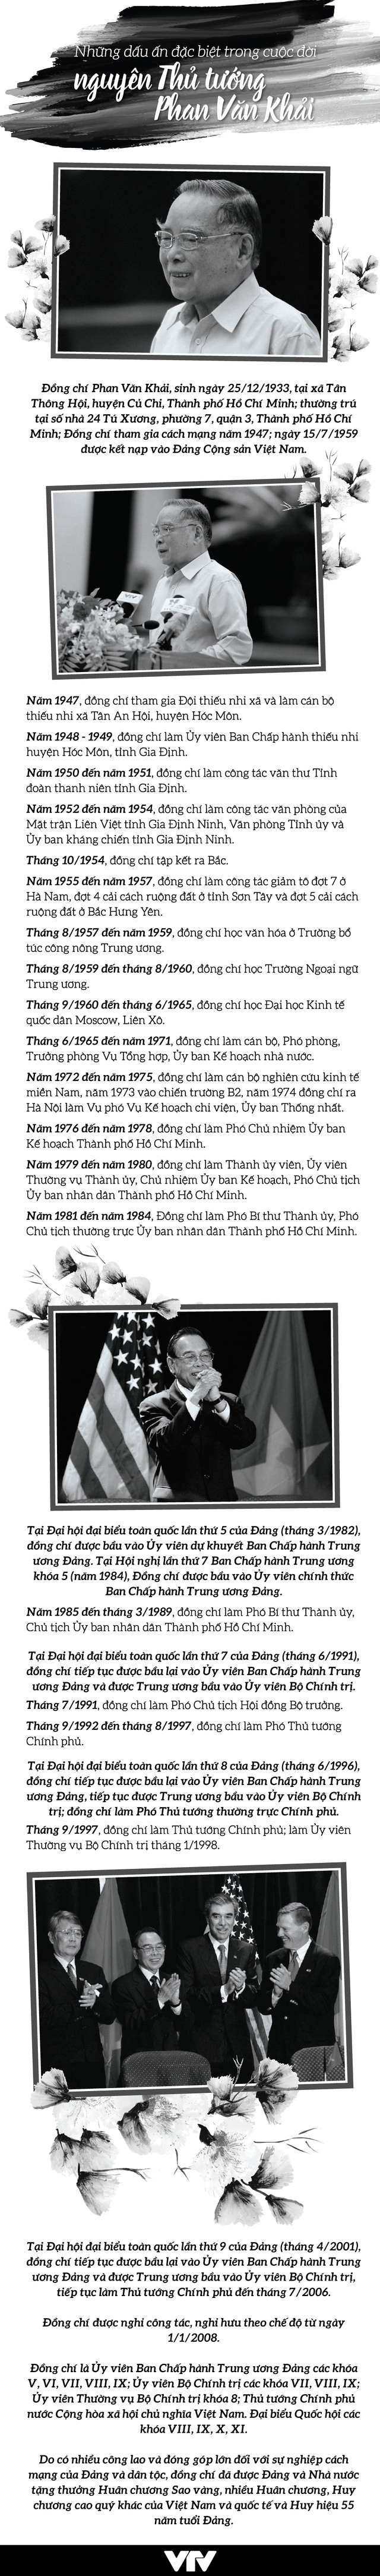 [INFOGRAPHIC] Những dấu ấn đặc biệt trong cuộc đời nguyên Thủ tướng Phan Văn Khải - Ảnh 1.